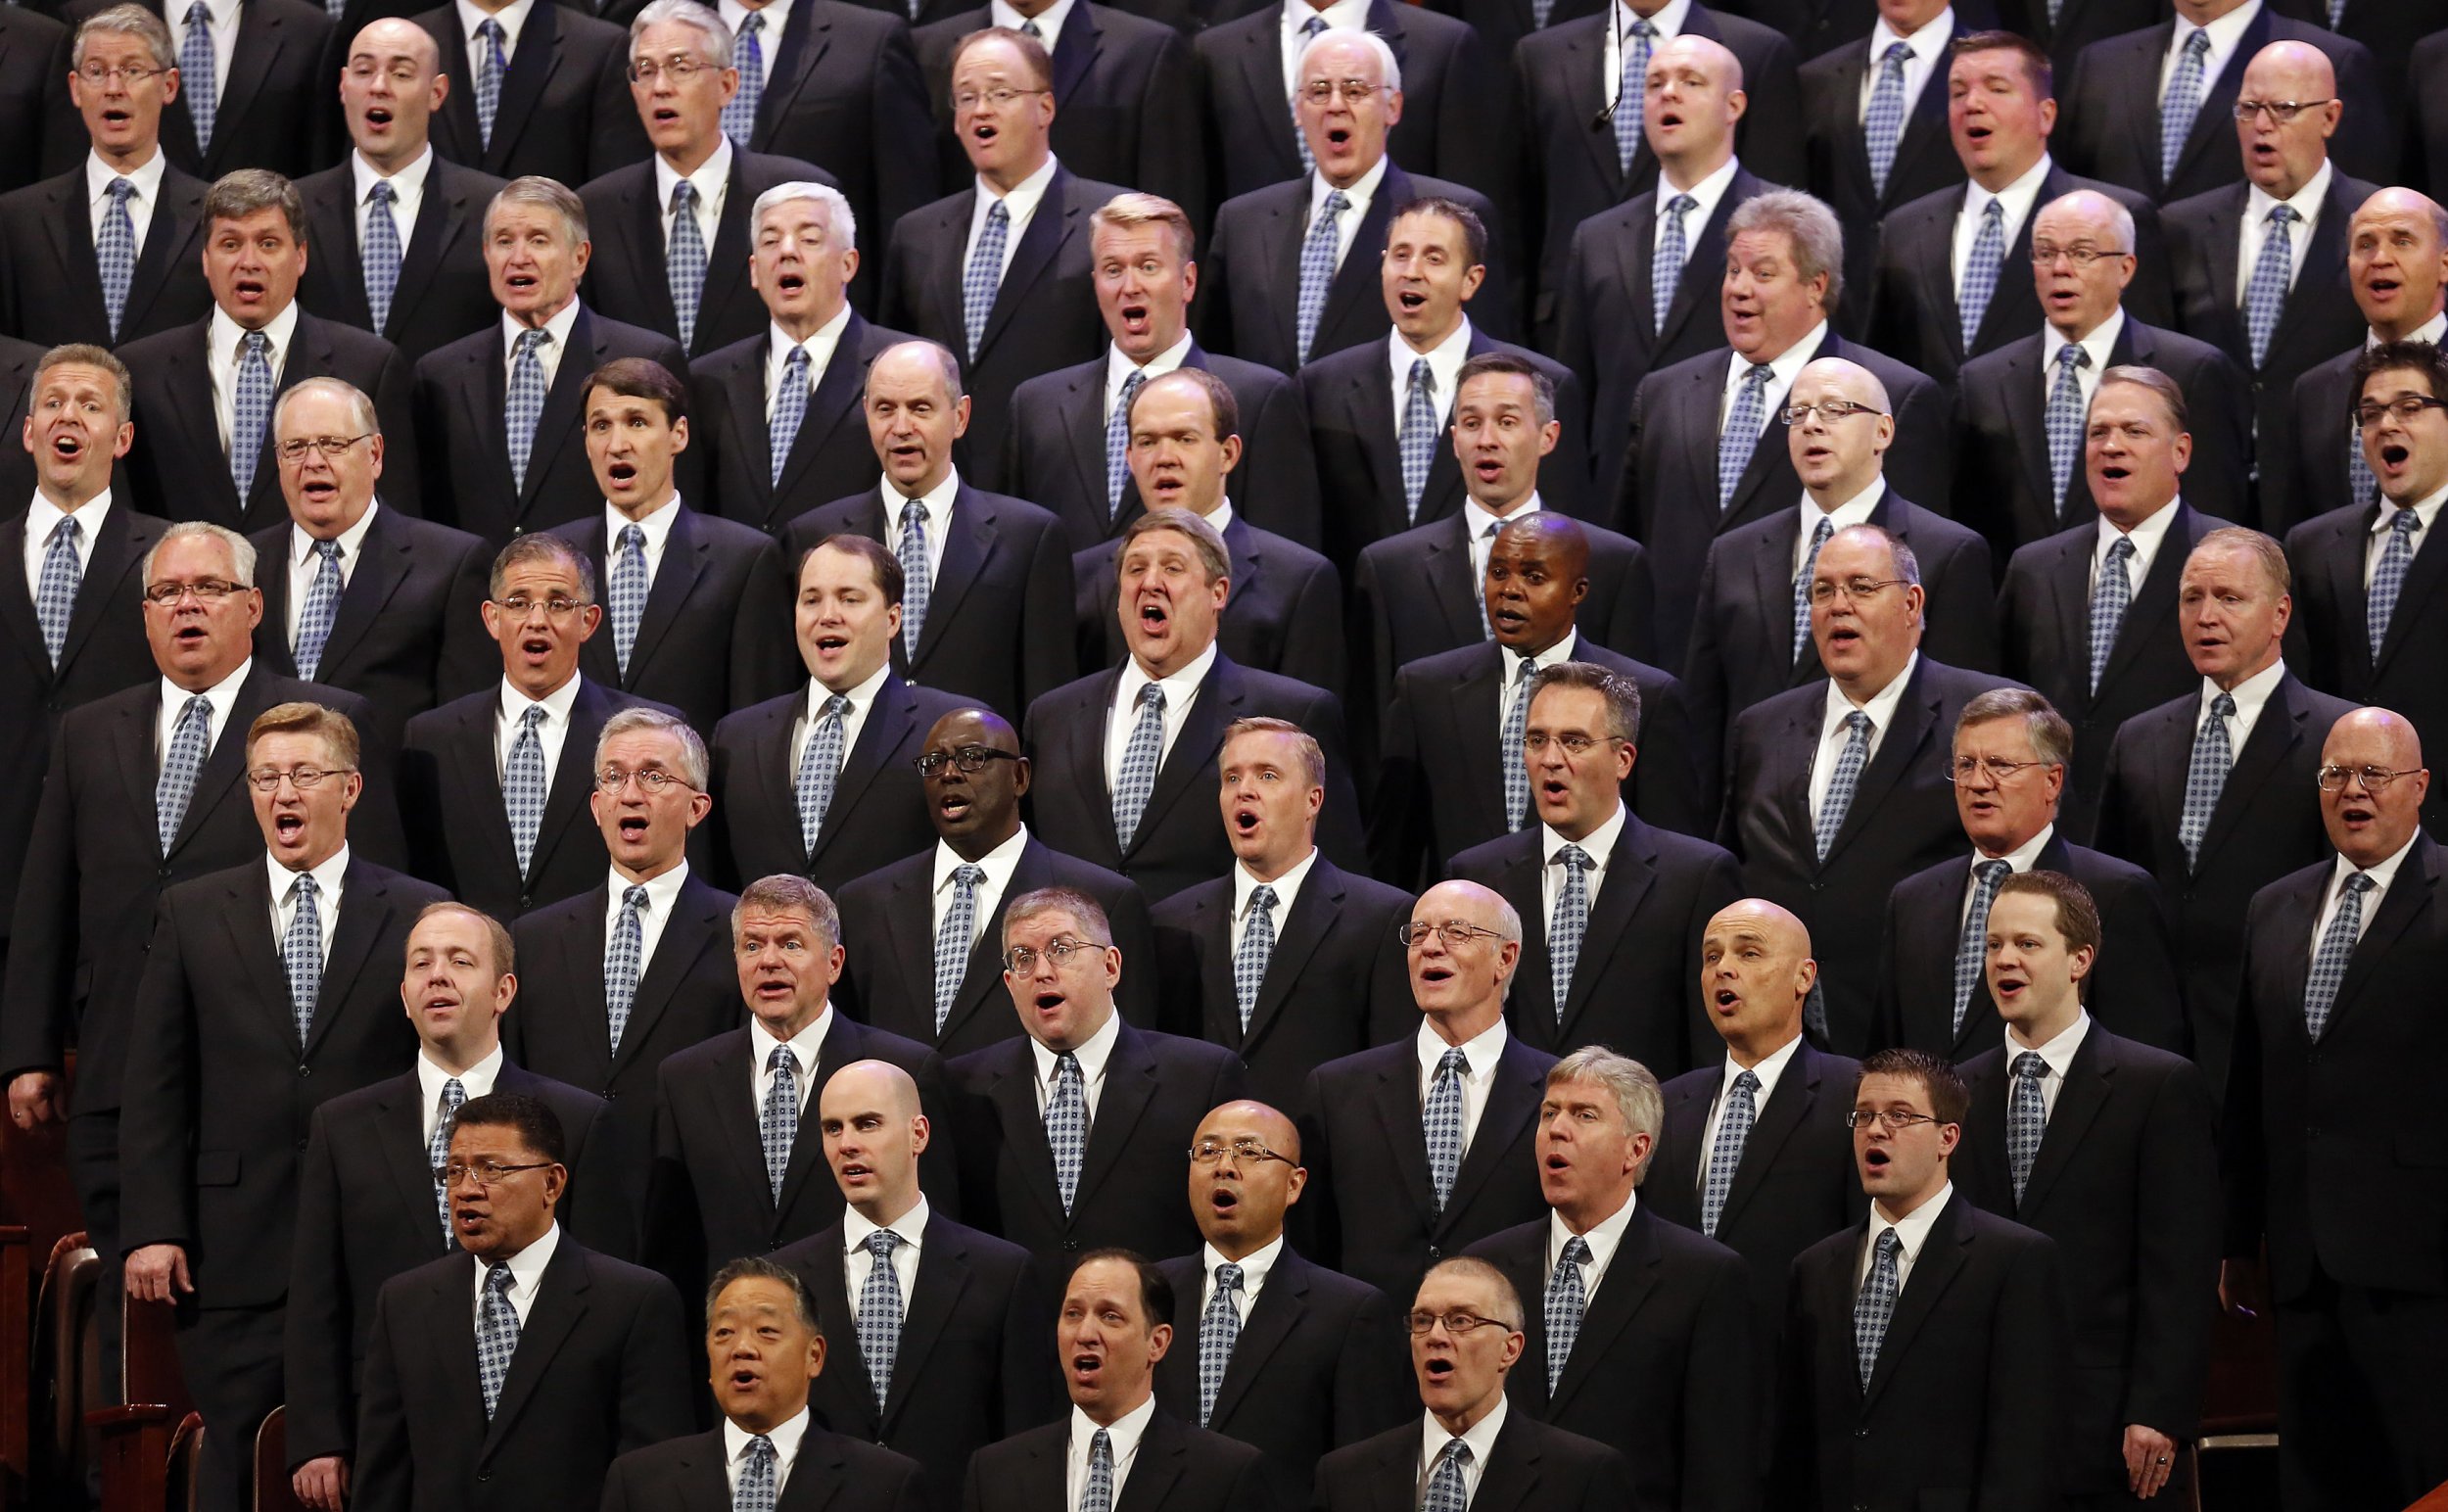 Mormon choir